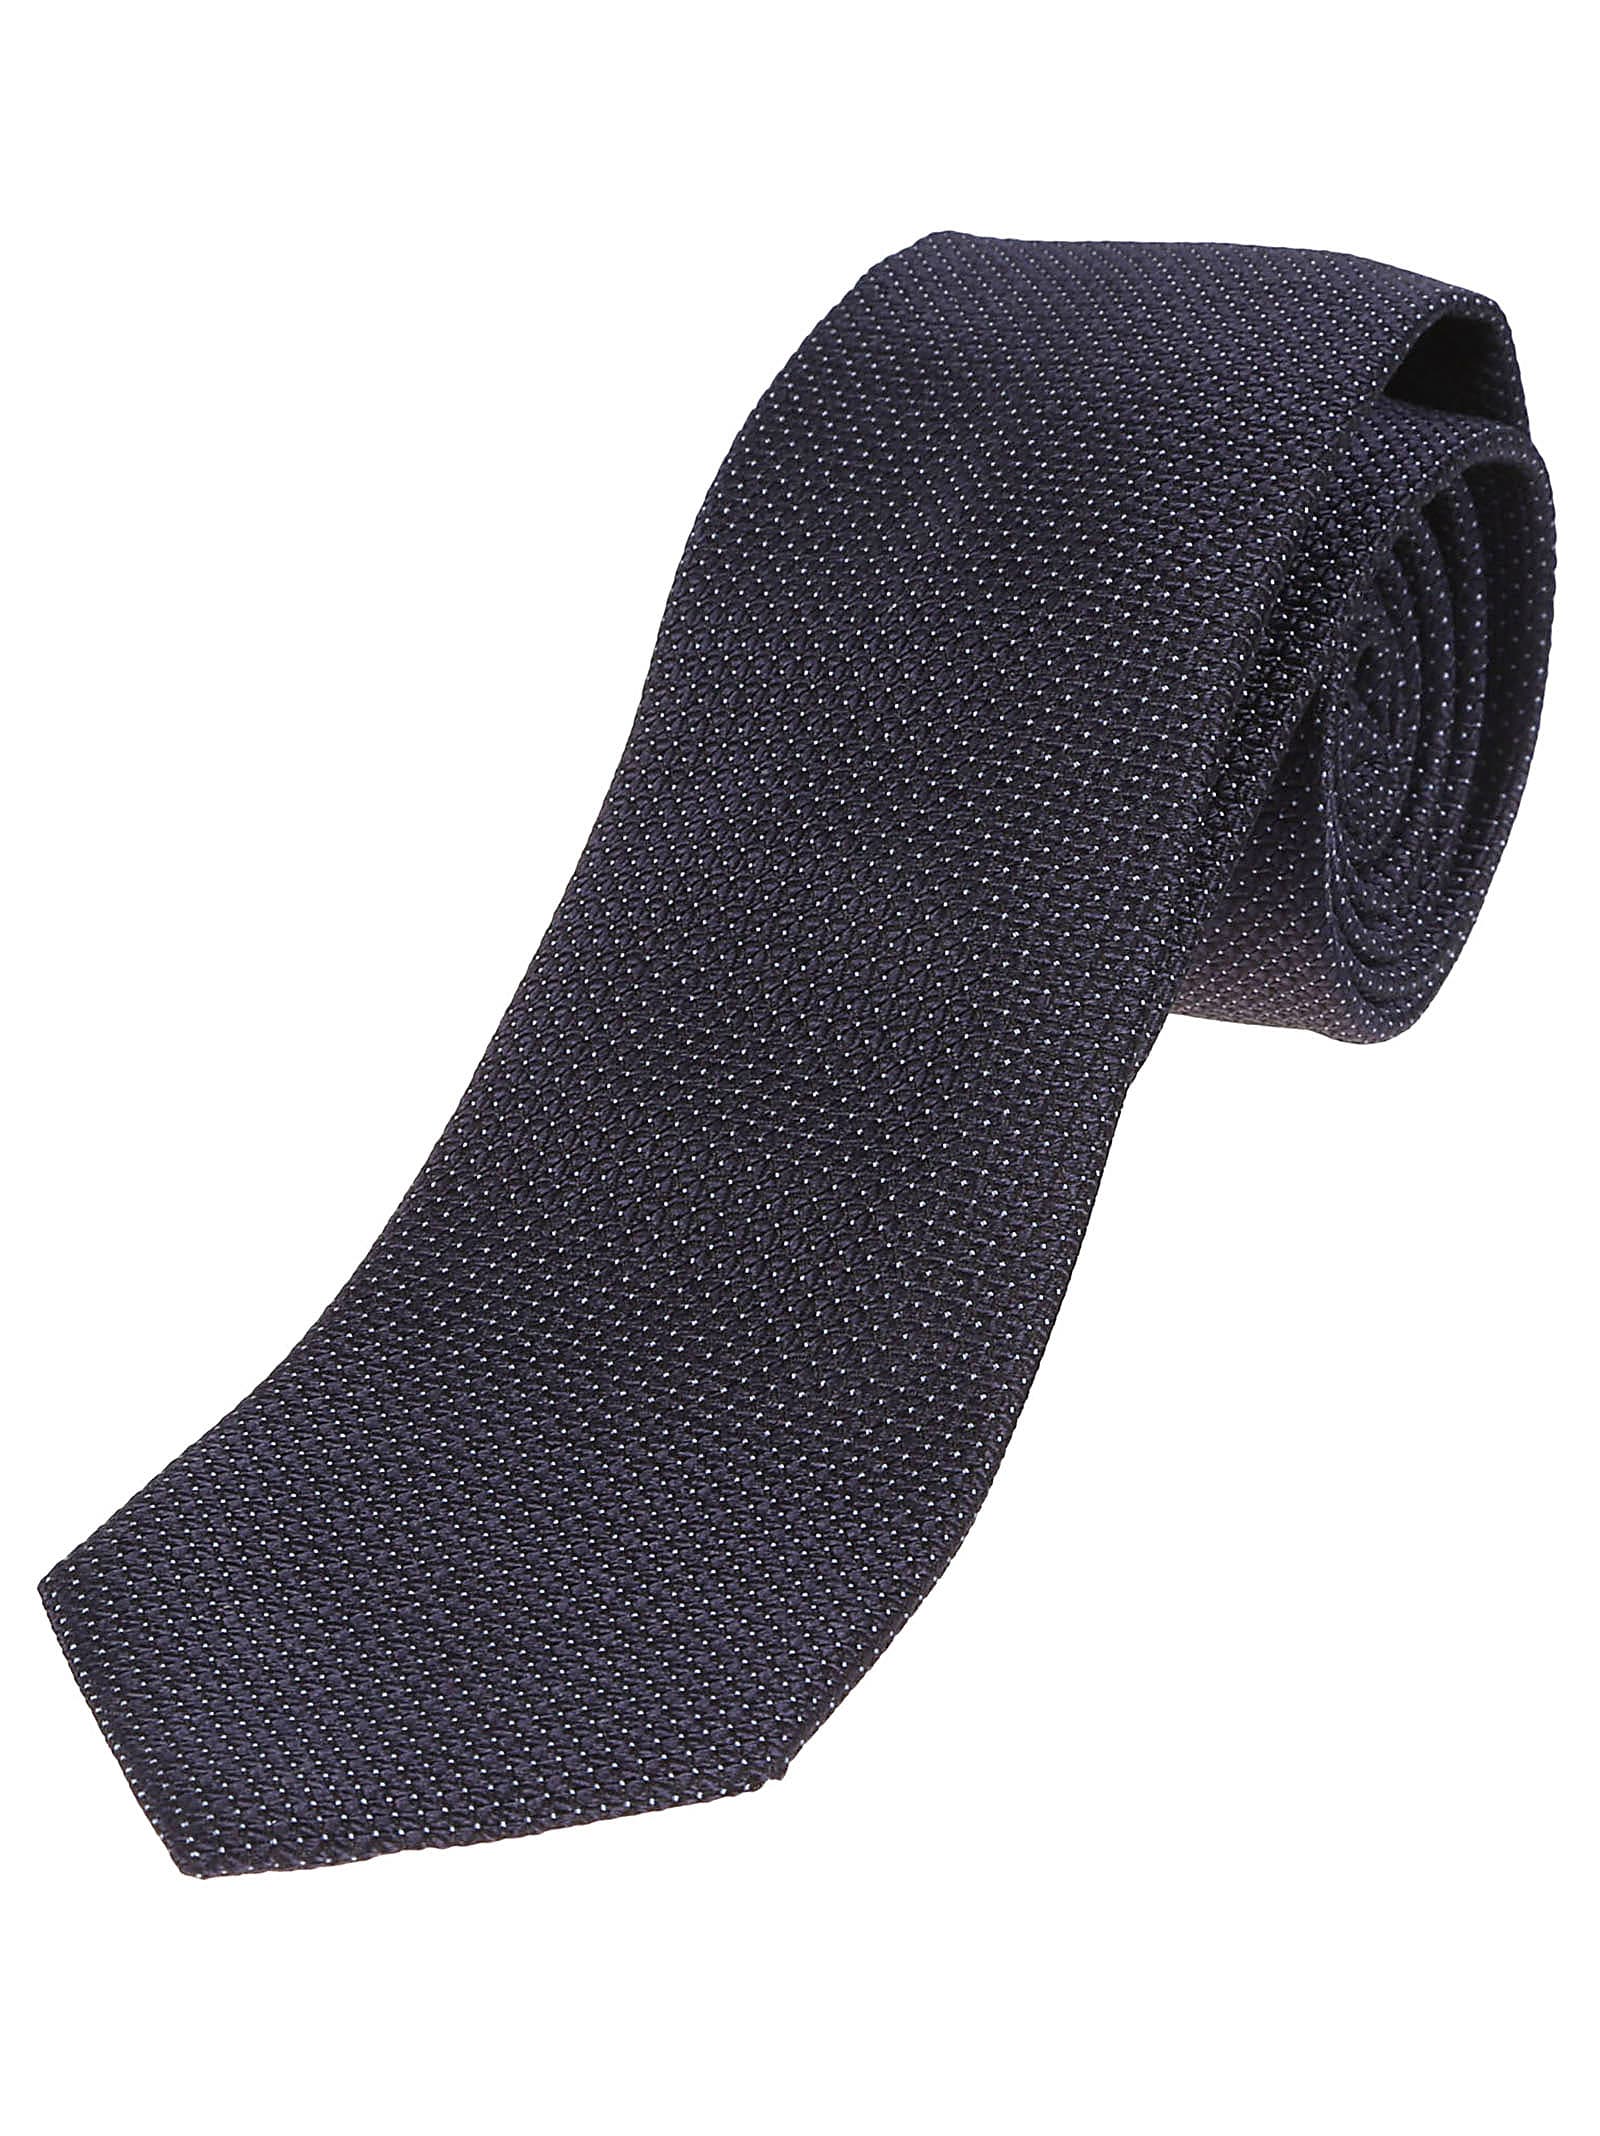 Shop Zegna Lux Tailoring Tie In Blu Navy